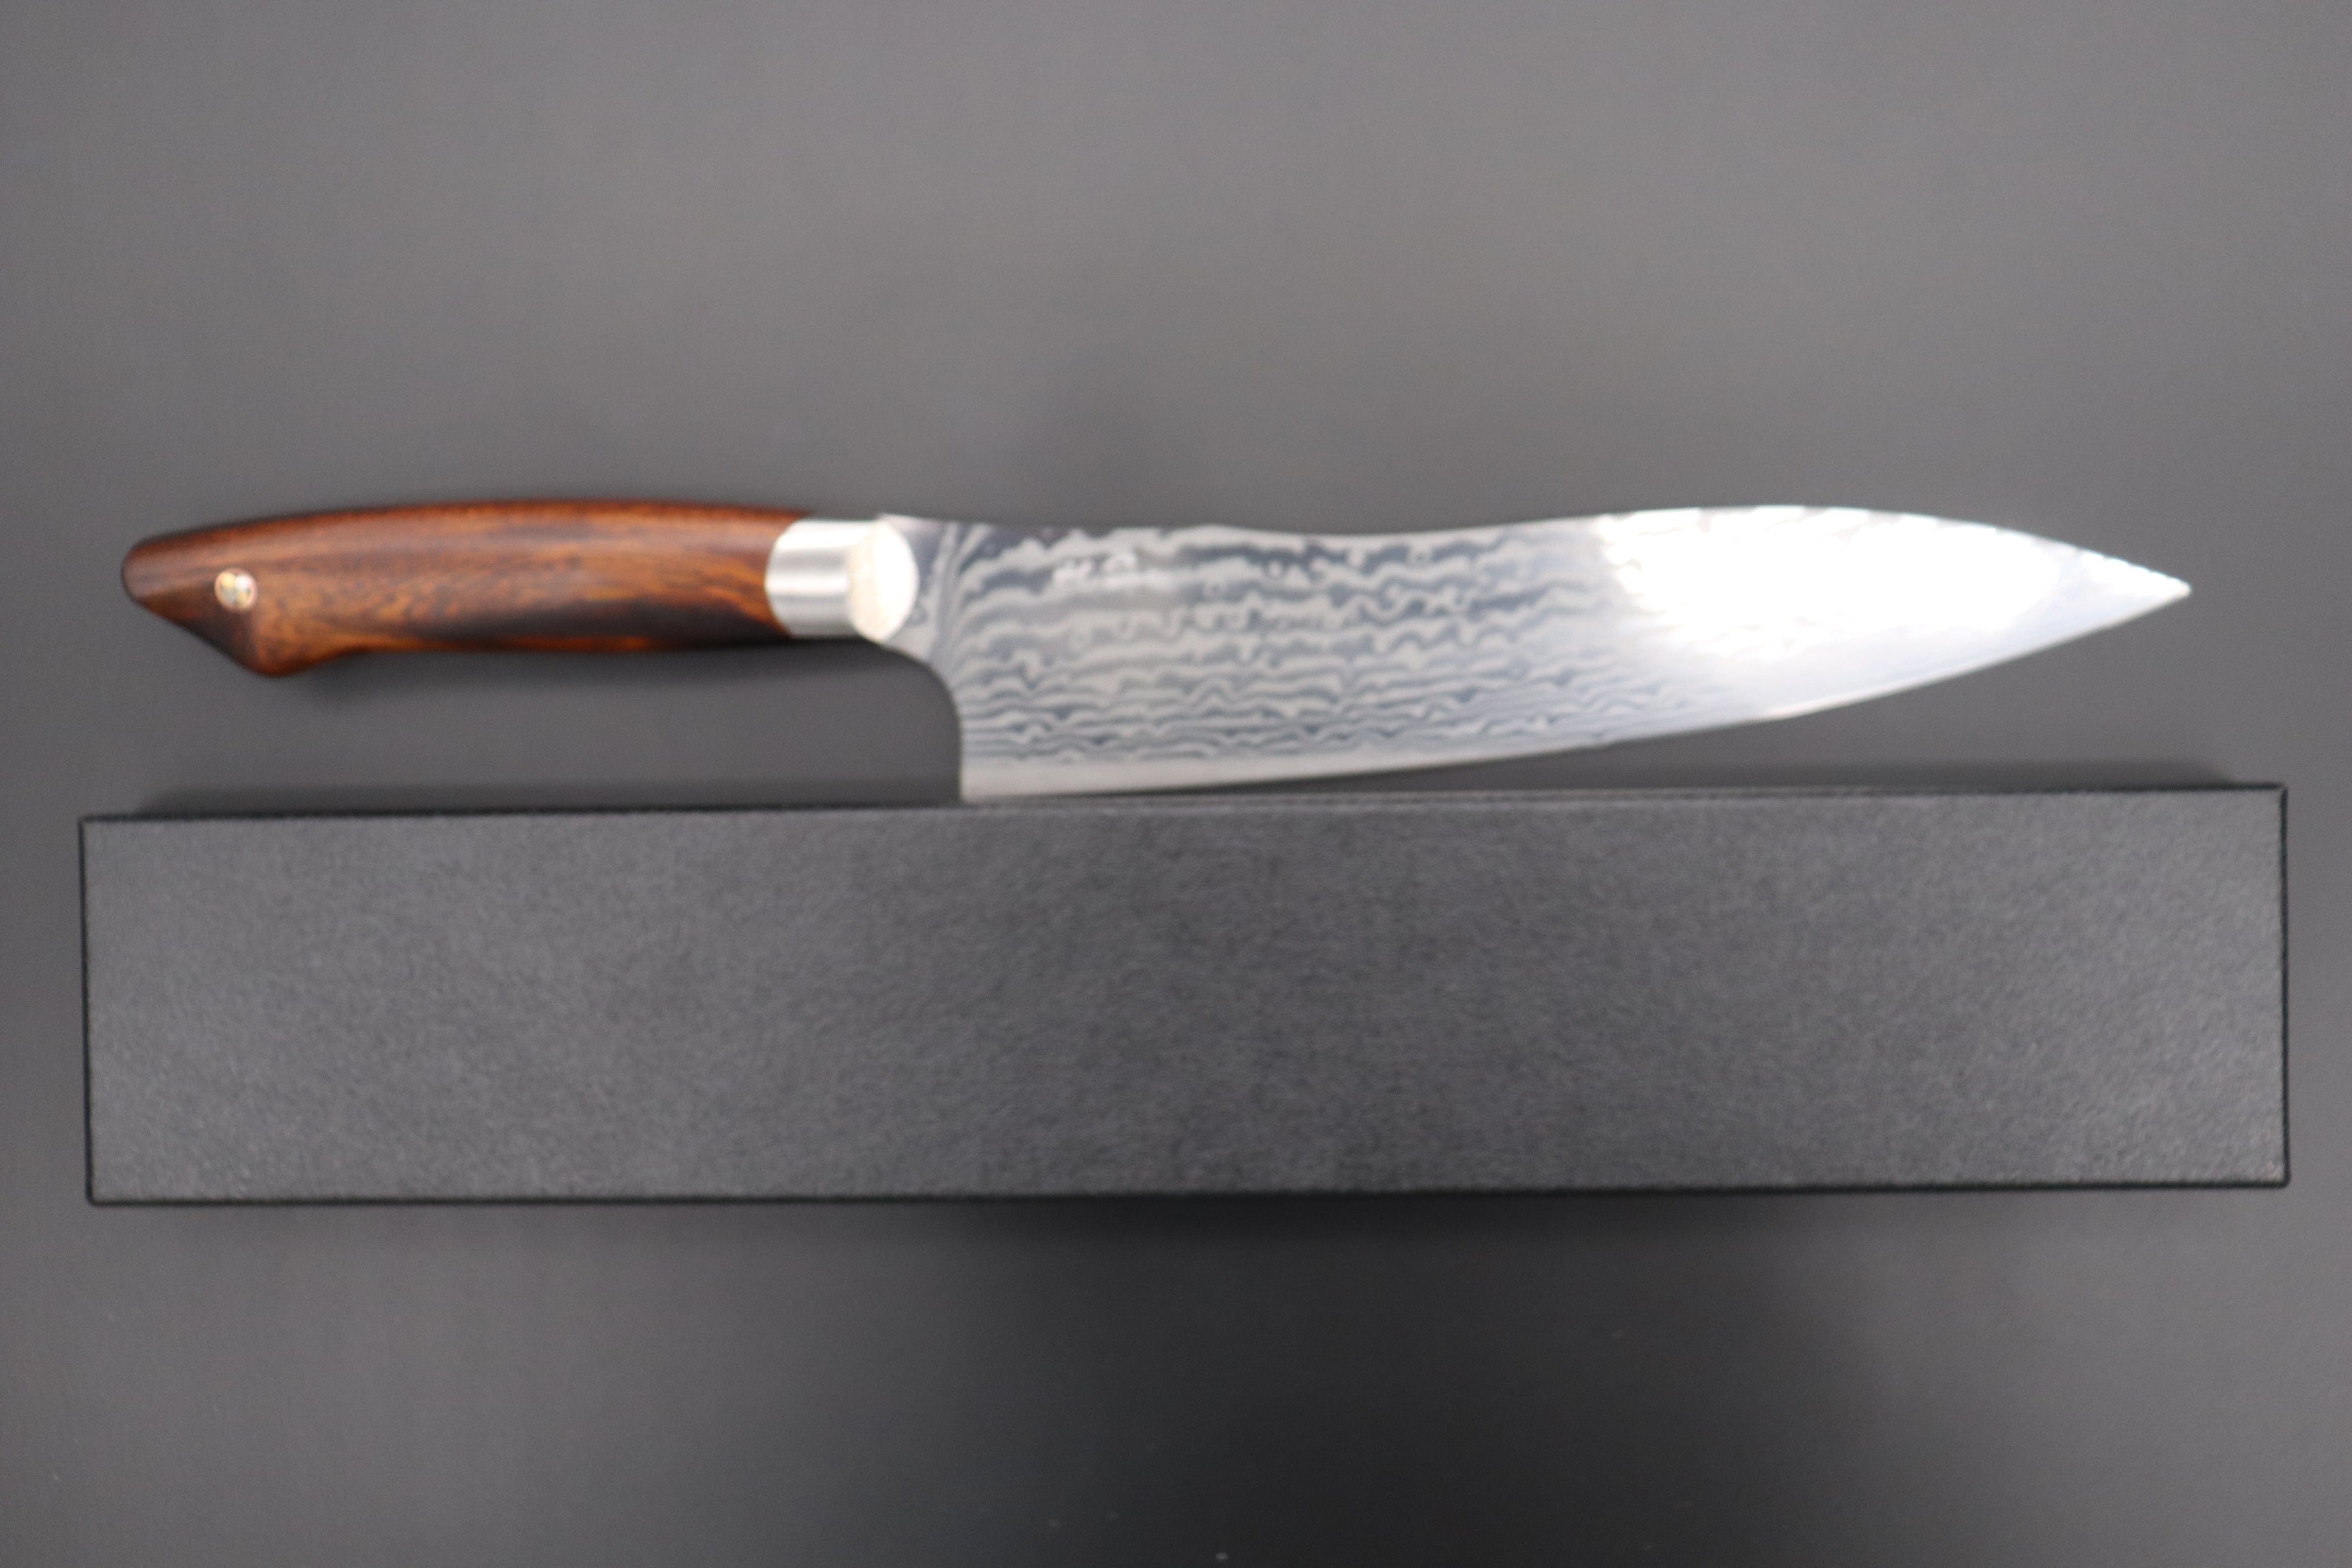 https://japanesechefsknife.com/cdn/shop/files/others-gyuto-custom-knife-maker-saito-hiroshi-custom-core-less-damascus-gyuto-190mm-7-4-inch-desert-ironwood-handle-sh-6-43309847413019.jpg?v=1698296450